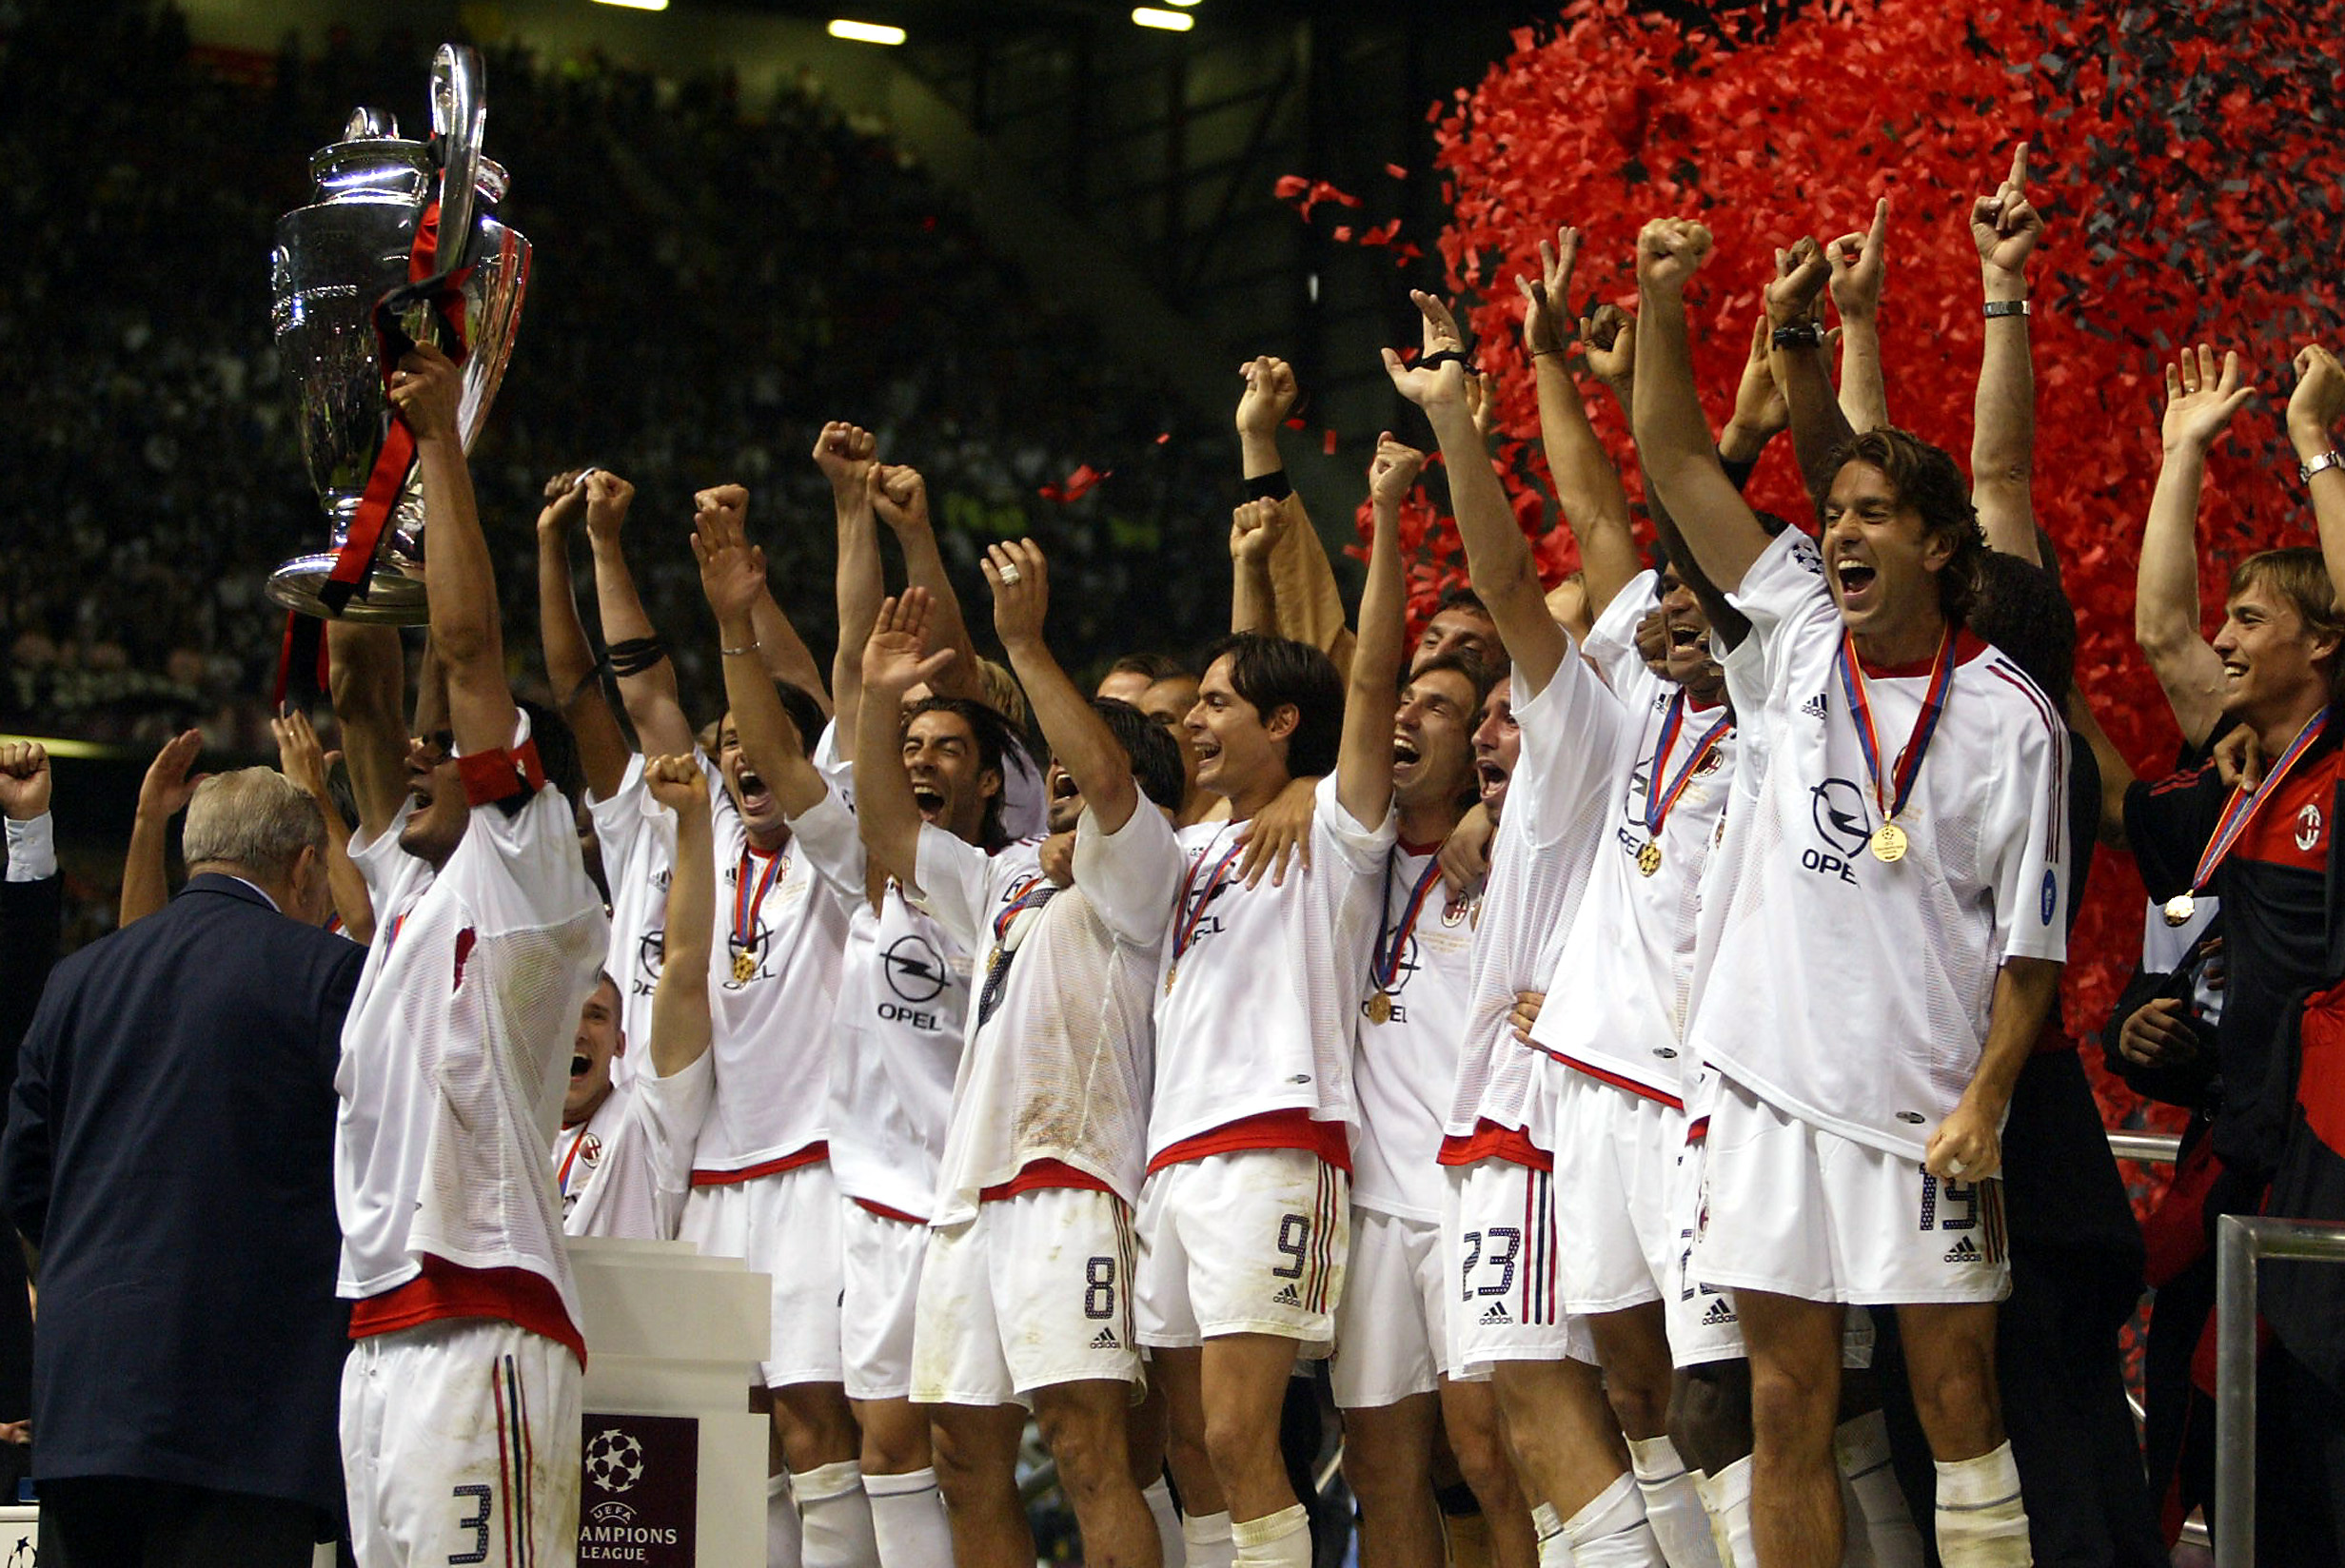 La imagen muestra un equipo de fútbol cuyos jugadores portan una medalla y que celebra un título con brazos en alto y con uno de ellos alzando una copa.